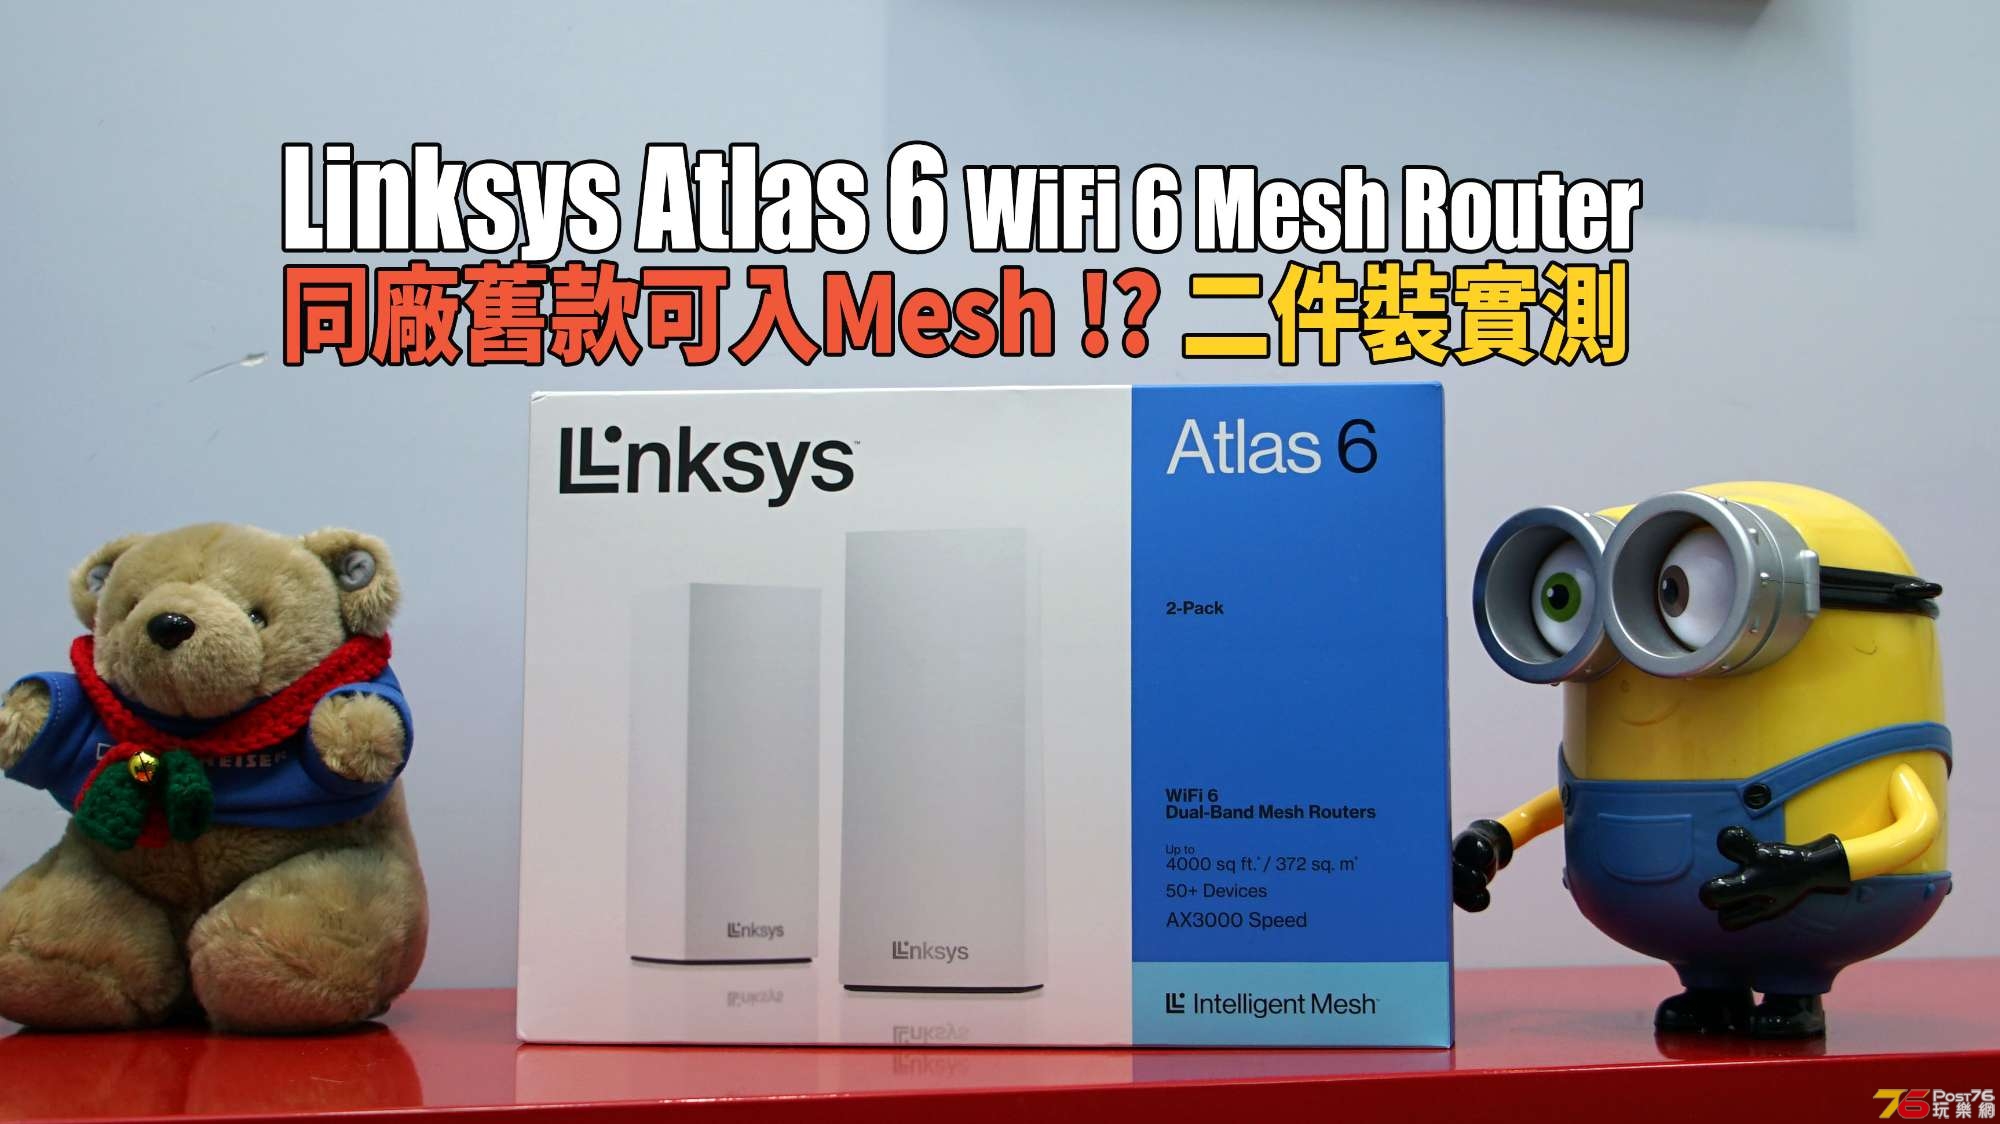 Linkys Atlas 6 review.jpg